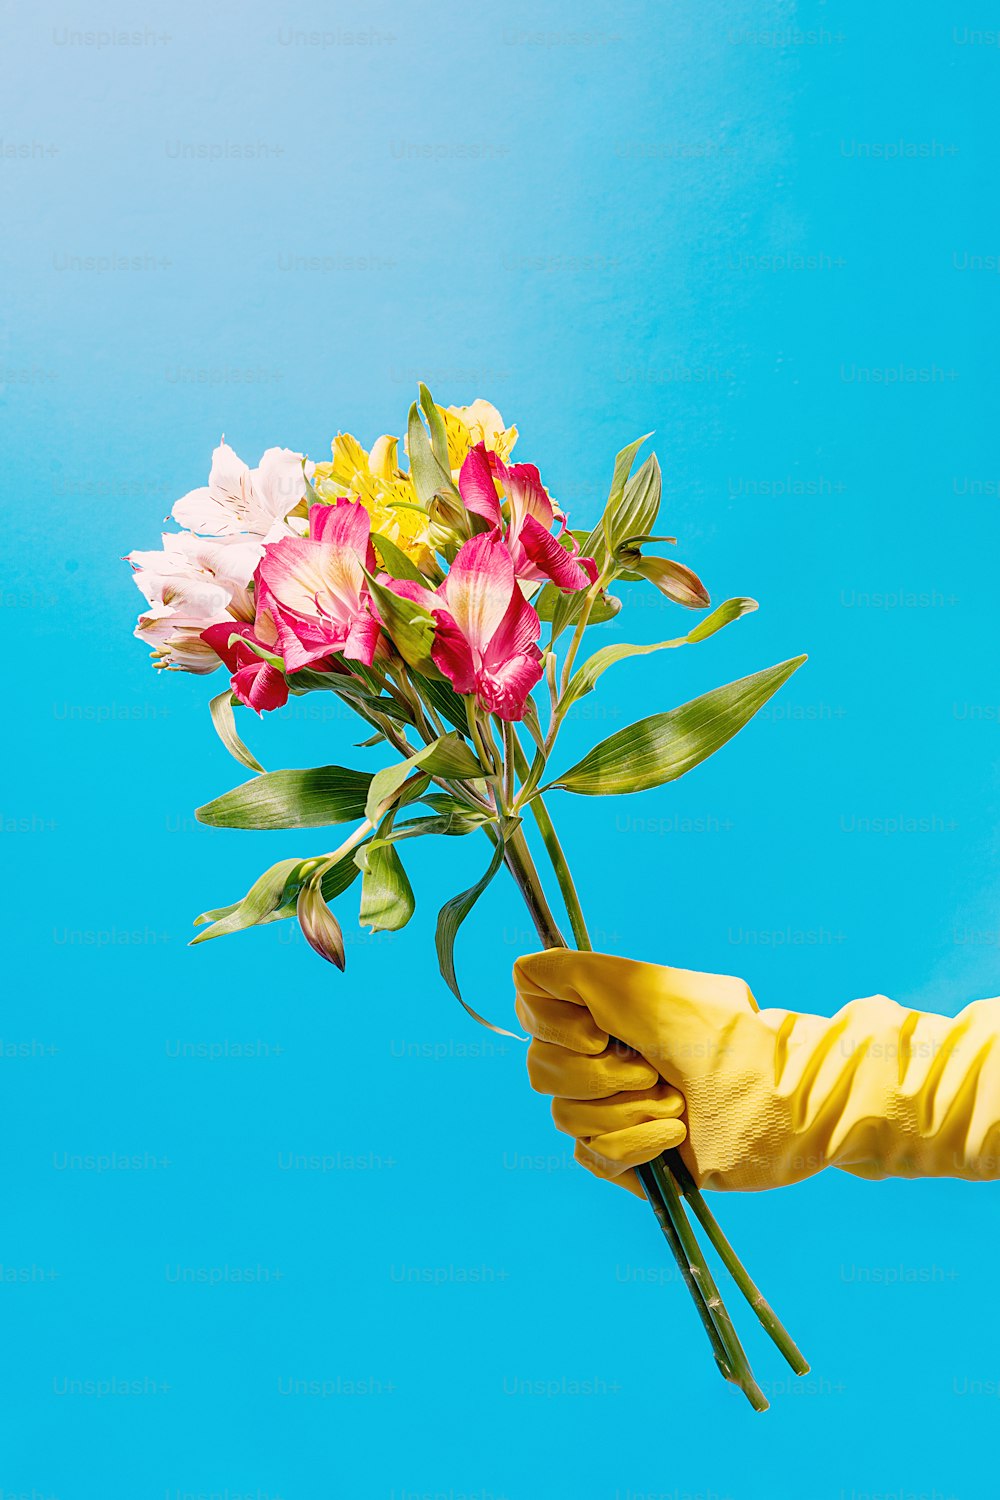 une personne portant des gants de caoutchouc jaunes tenant un bouquet de fleurs